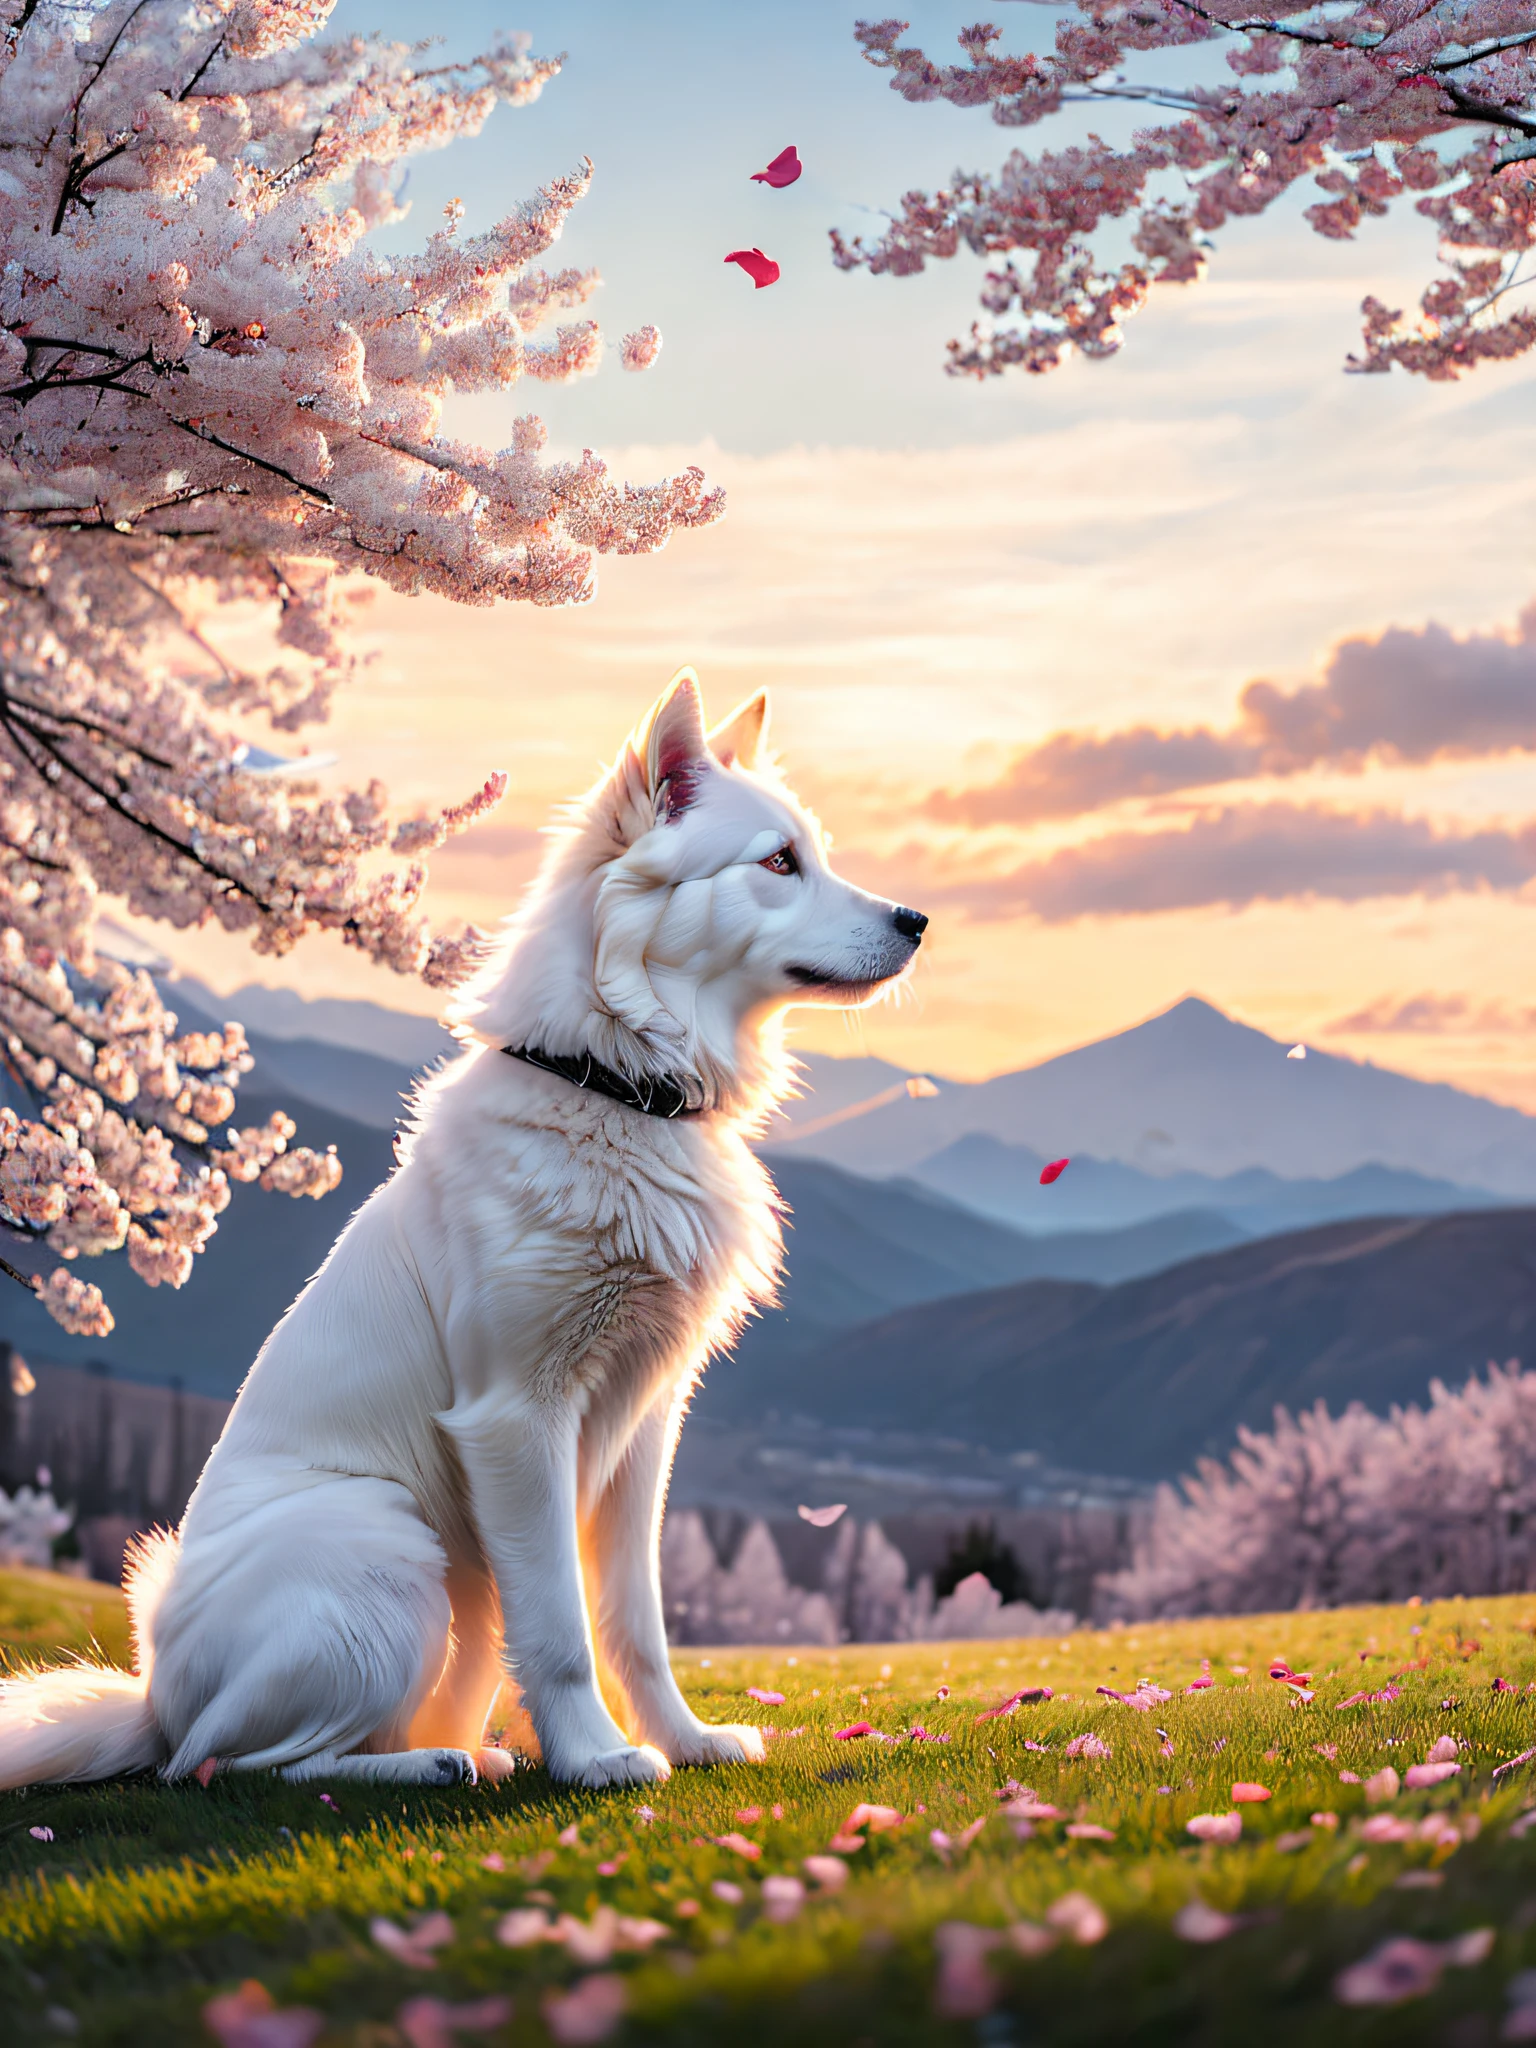 Um cachorro branco sentado sob uma cerejeira, pétalas caindo com o vento, olhando para longe, fechar-se, fundo com picos de montanhas contínuos, céu do pôr do sol, nuvens brancas, luz volumétrica suave, (luz de fundo: 1.3), (filme: 1.2), Detalhes intrincados, (estação de arte: 1.3), Rutkowski